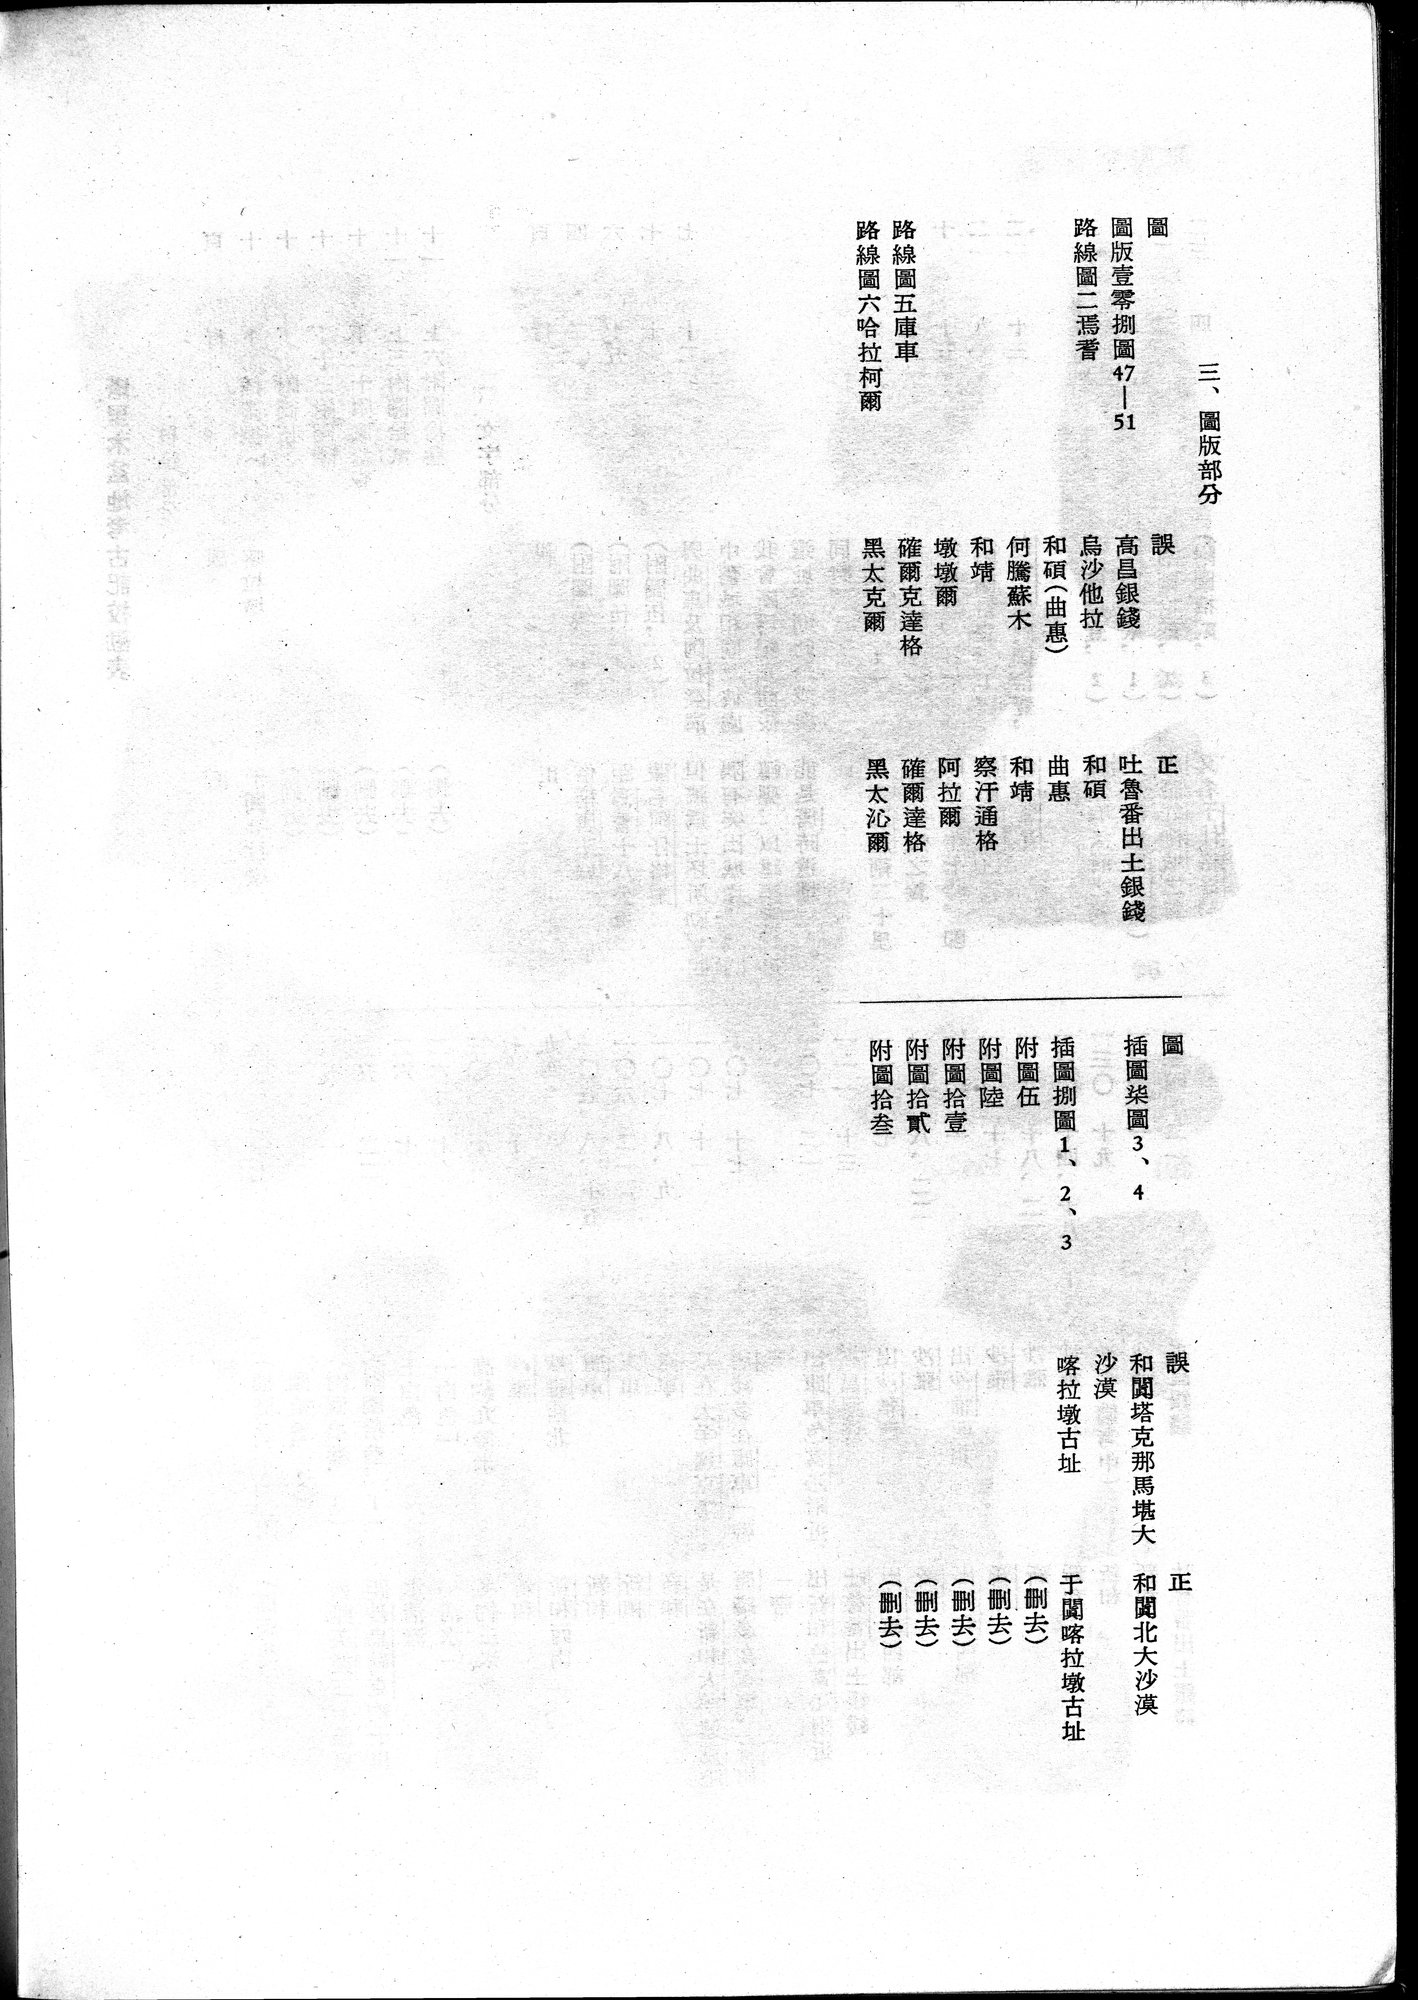 塔里木盆地考古記 : vol.1 / Page 366 (Grayscale High Resolution Image)